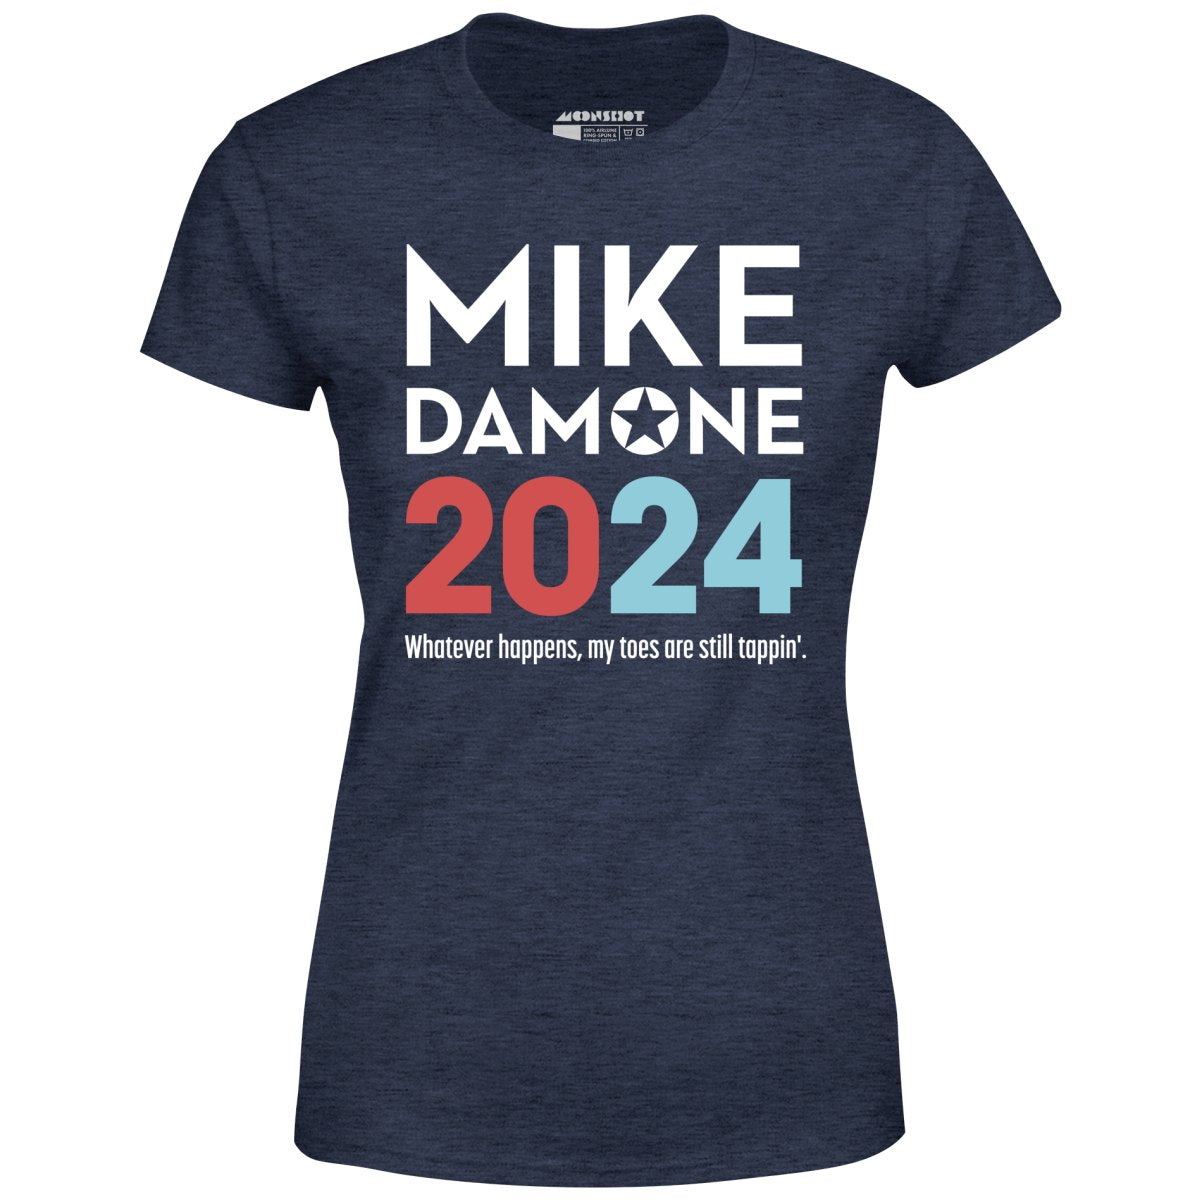 Mike Damone 2024 - Women's T-Shirt